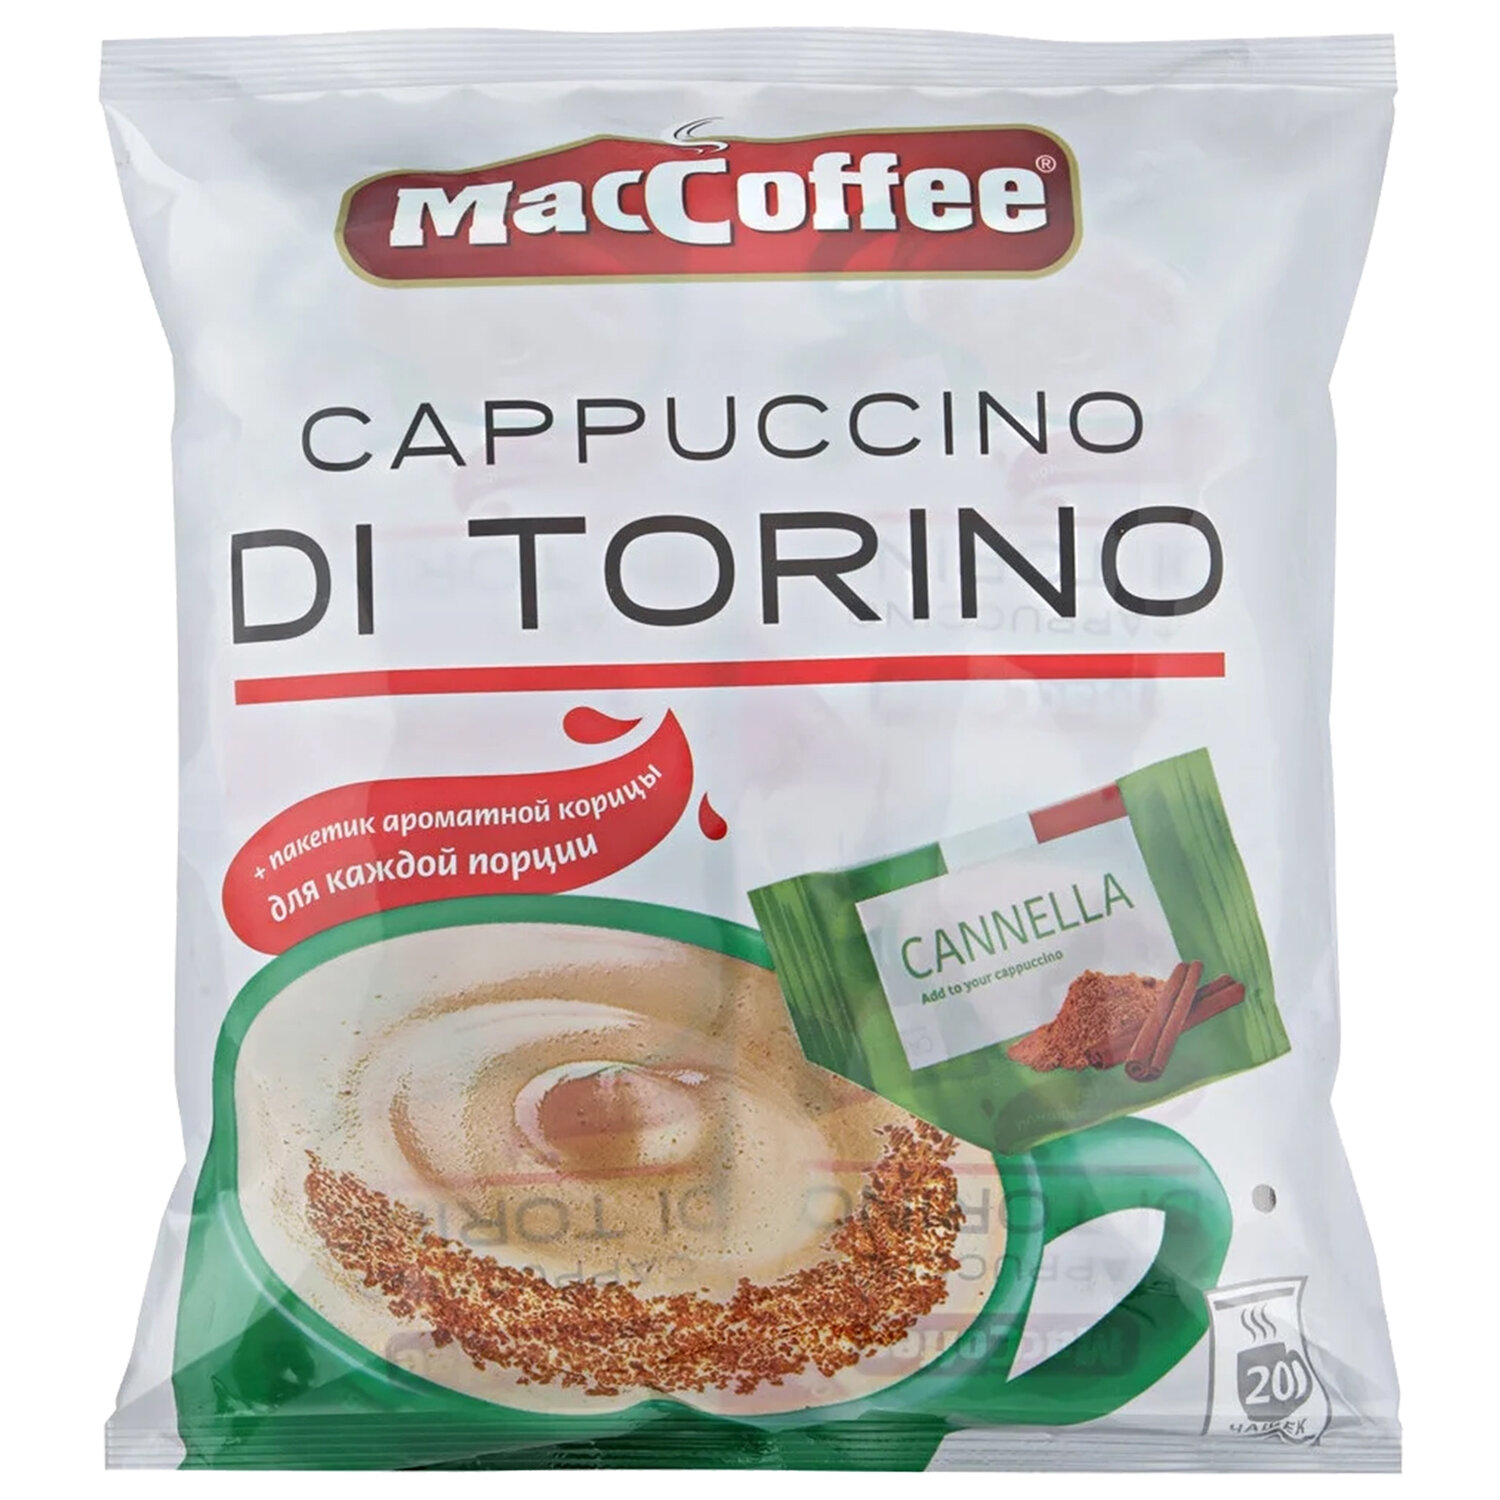 Маккофе торино. Растворимый кофе MACCOFFEE Cappuccino di Torino. MACCOFFEE Cappuccino di Torino с корицей. Маккофе 3 в 1 капучино di Torino. Кофе MACCOFFEE 3в1 капучино di Torino 25,5гр.